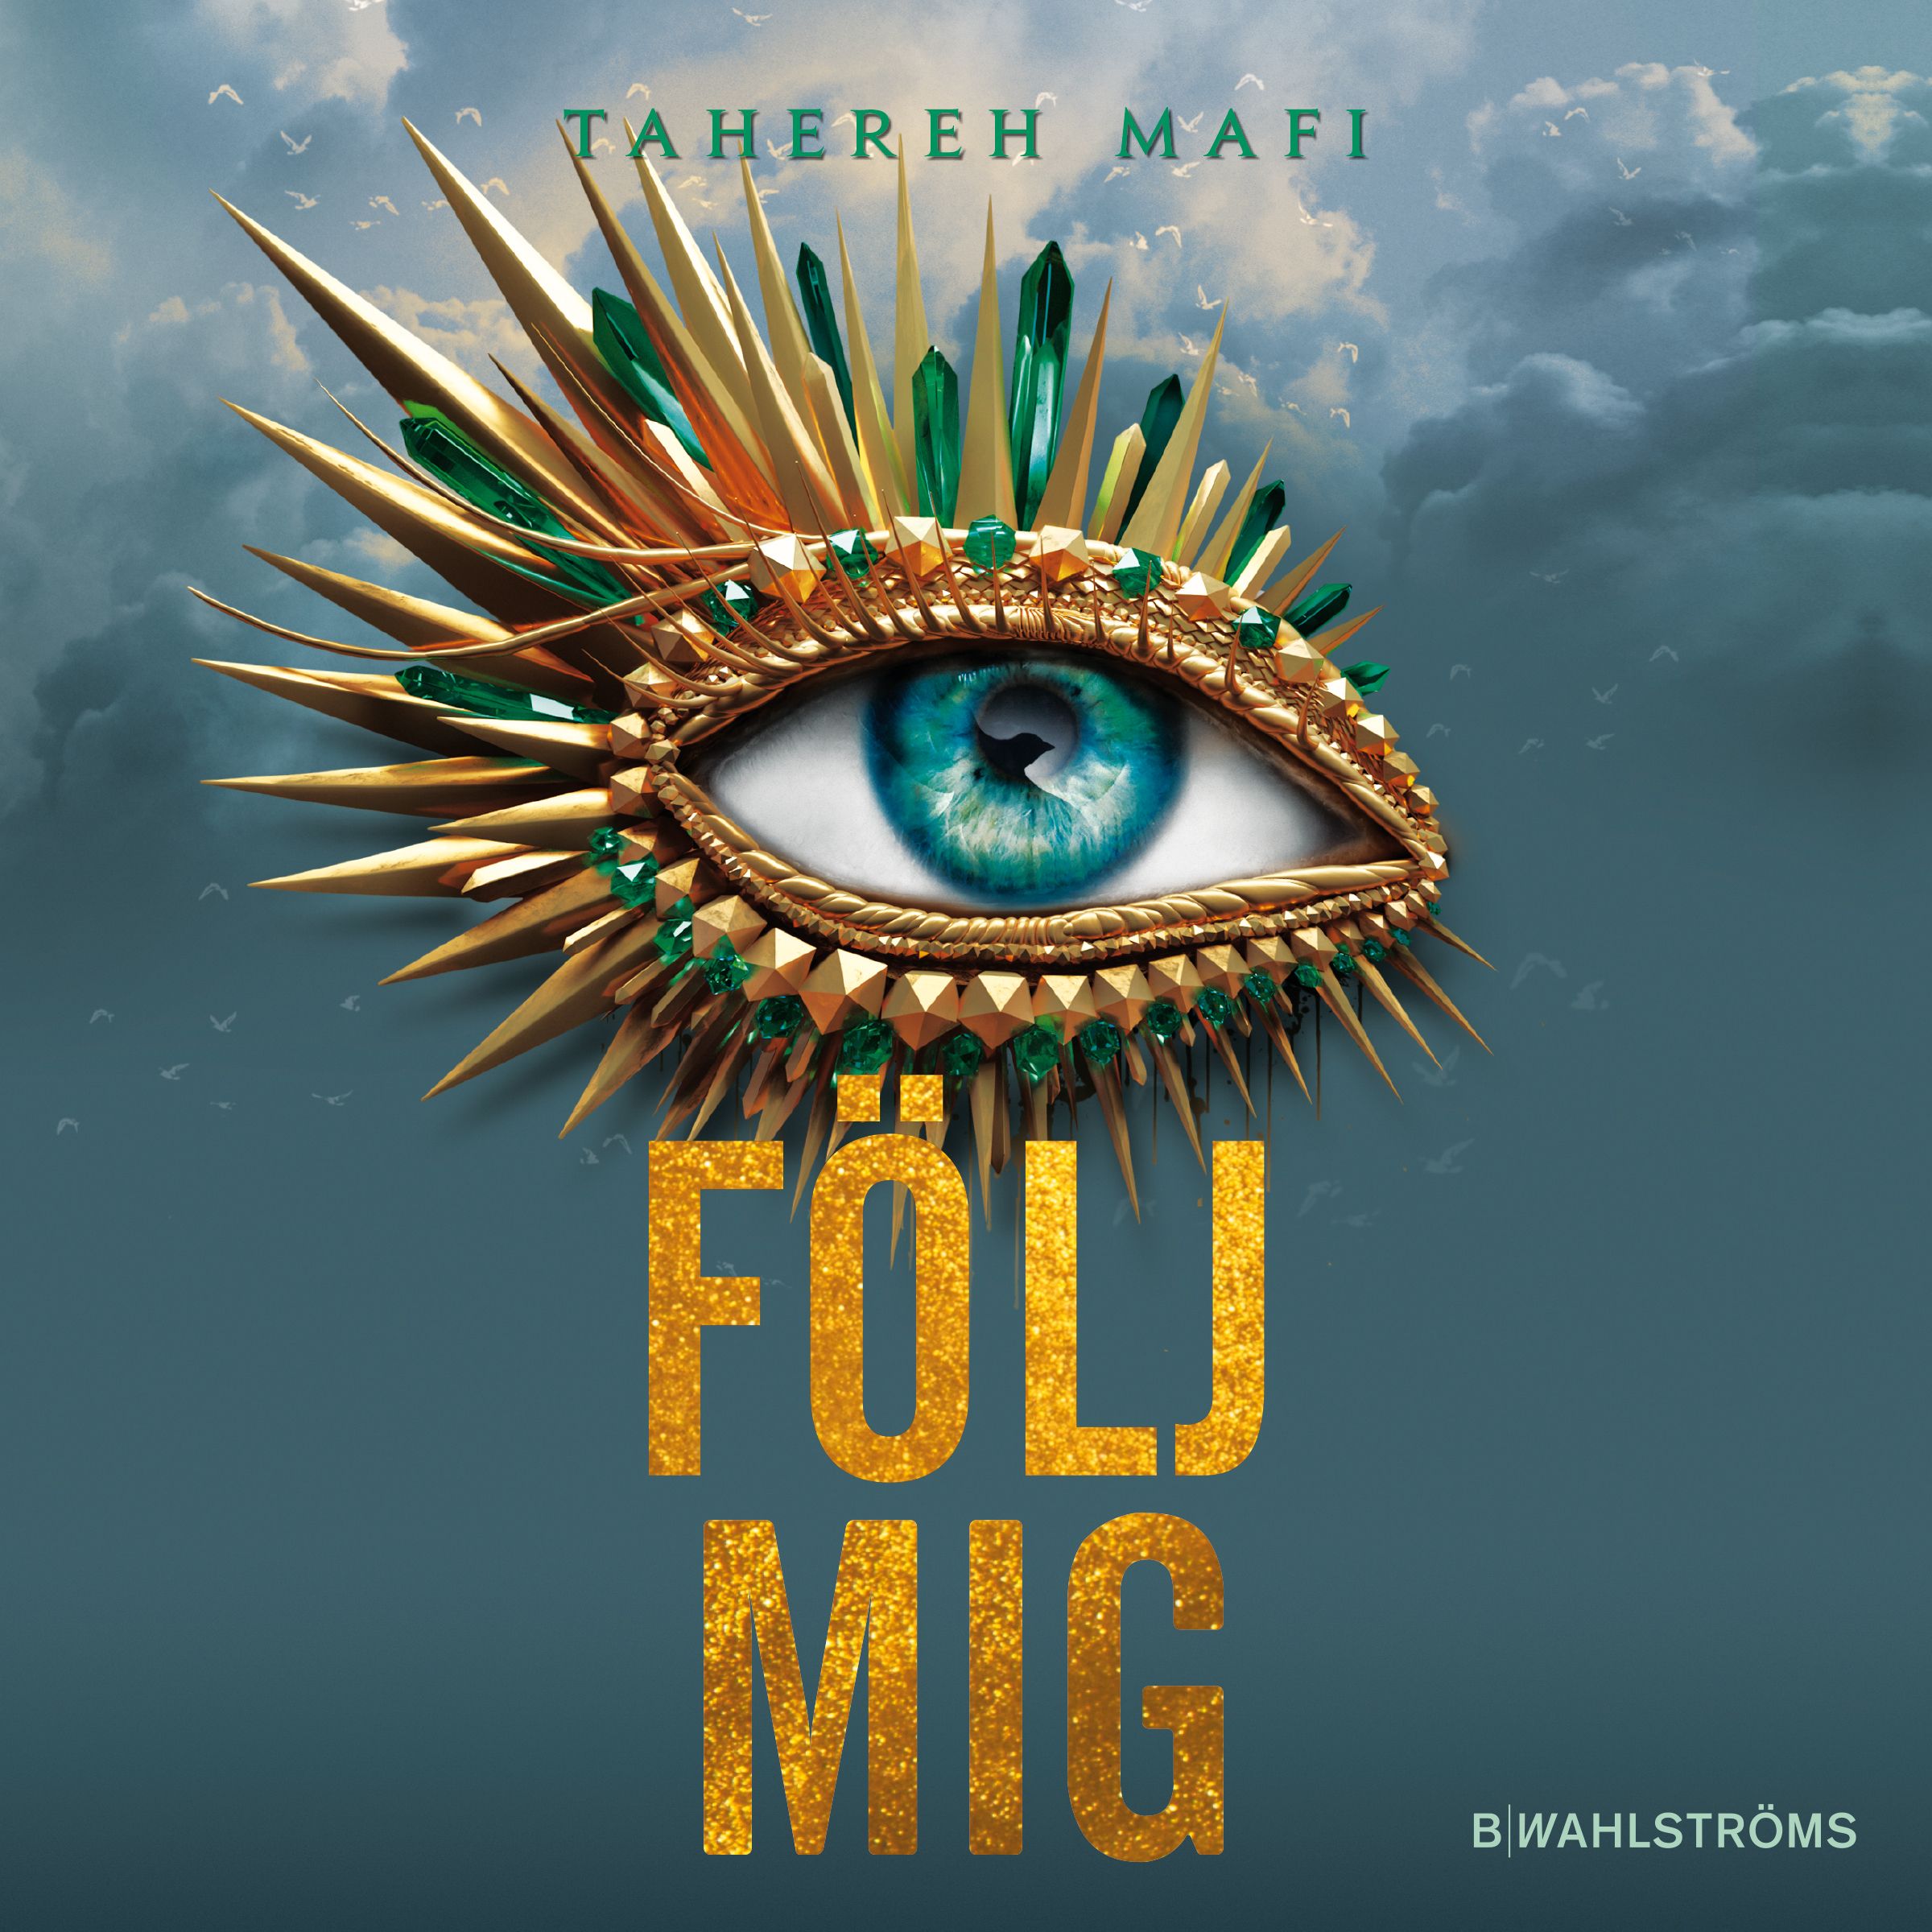 Följ mig, ljudbok av Tahereh Mafi